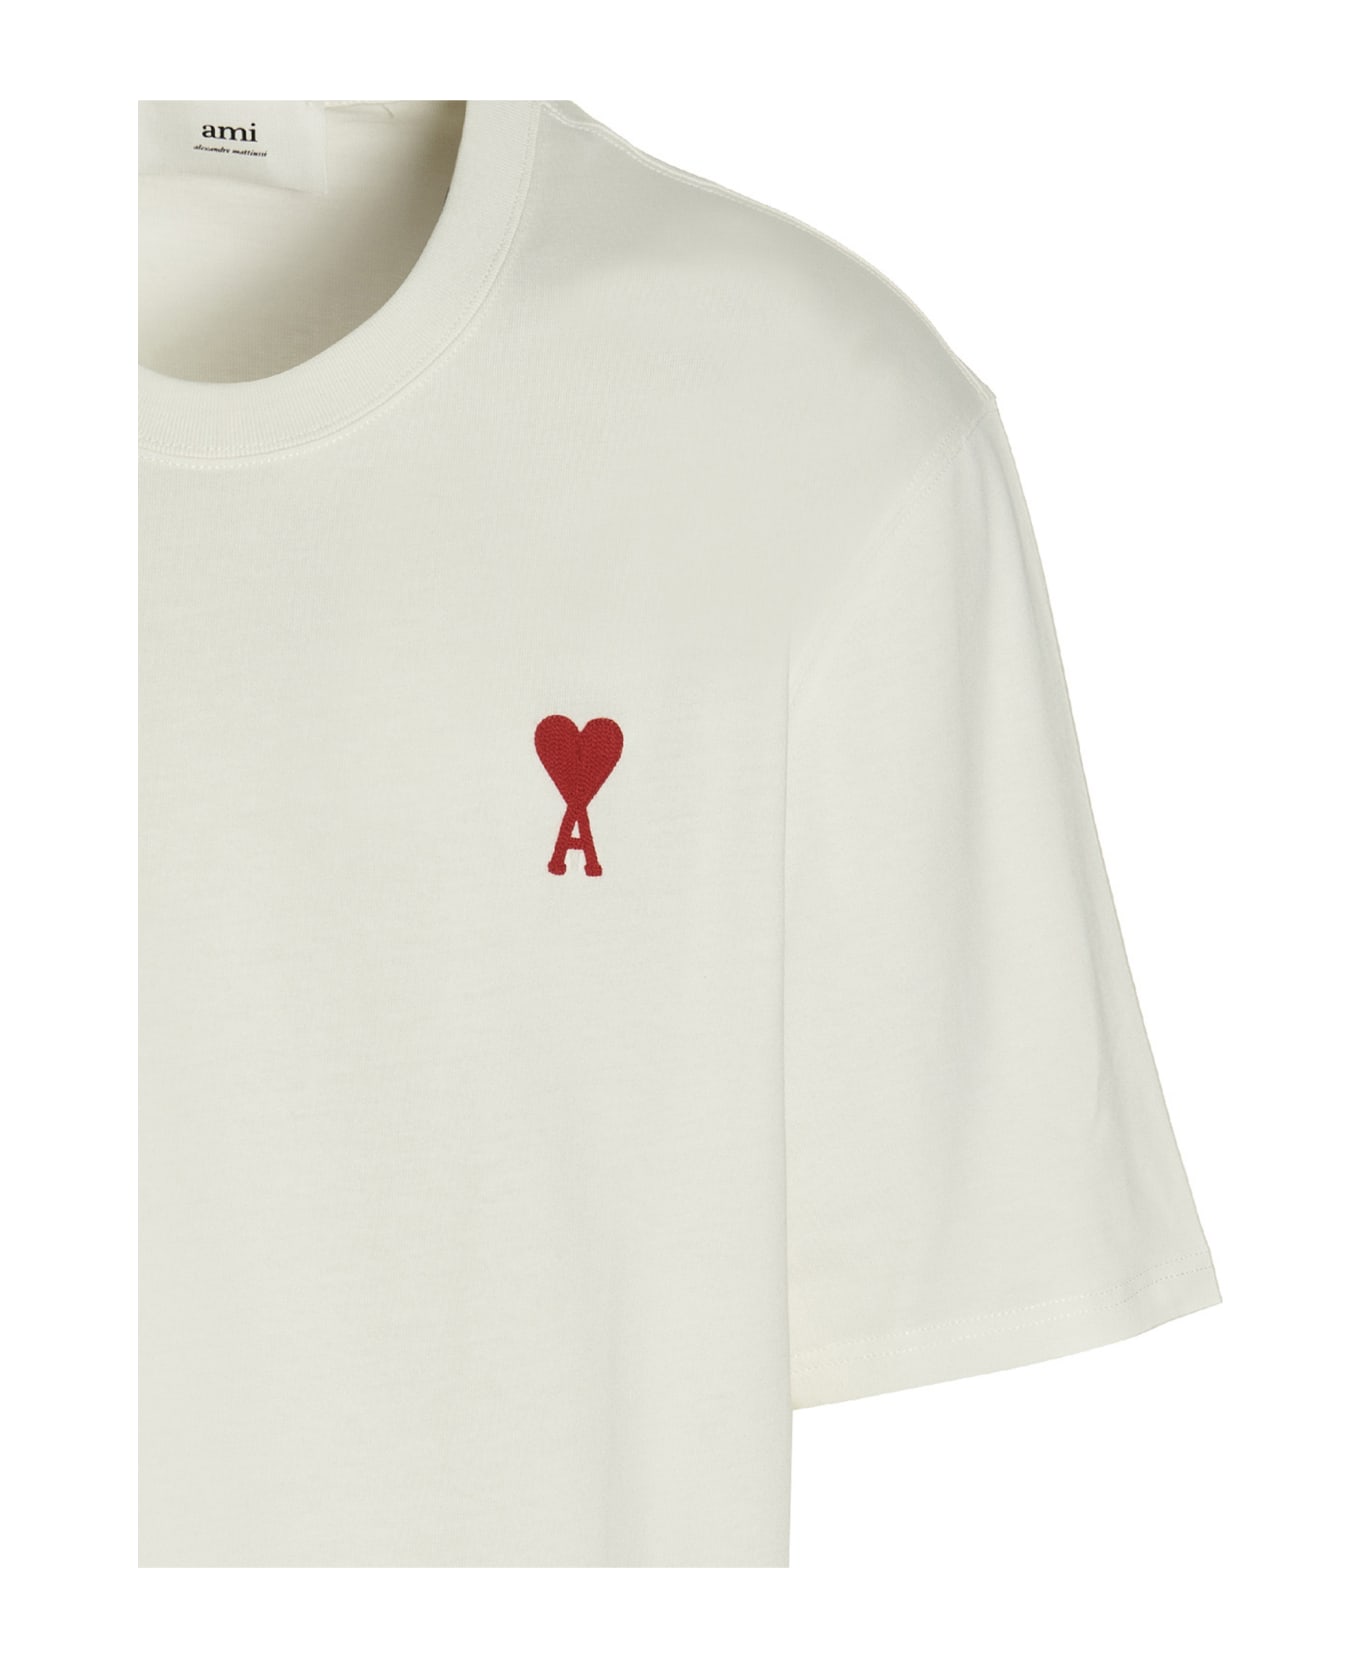 Ami Alexandre Mattiussi 'adc' T-shirt - White Red